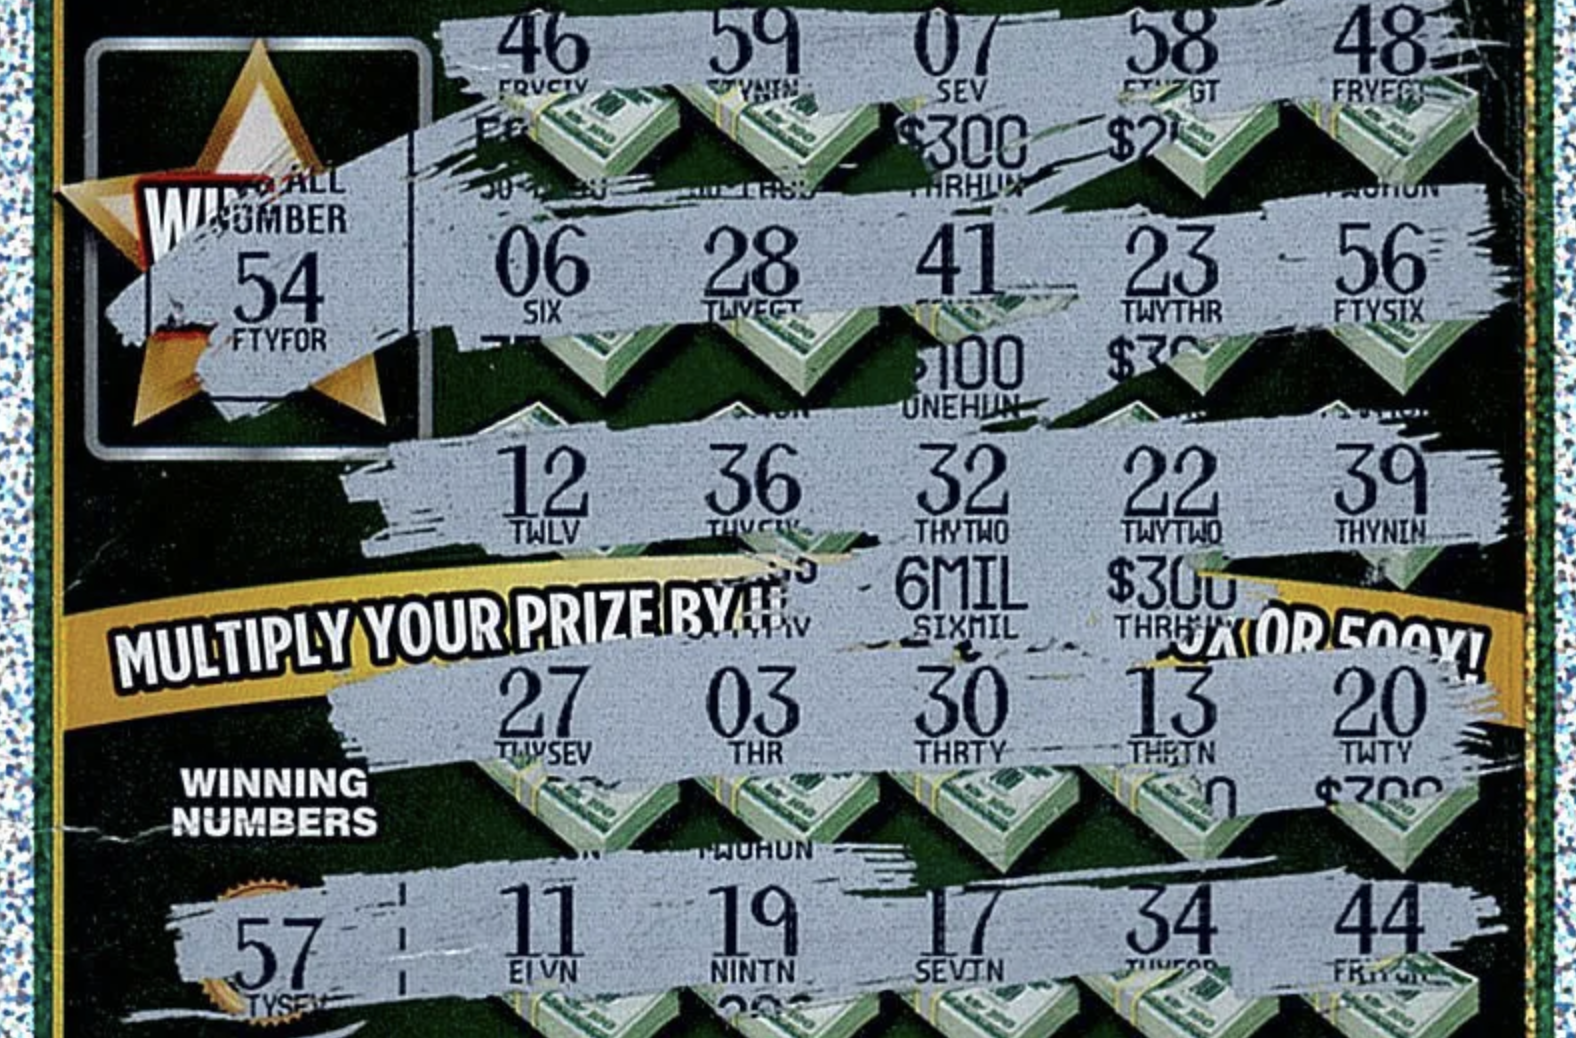 Michigan lotereya klubi ipoteka kreditlarini o'chirish uchun 6 million dollar yutib oling